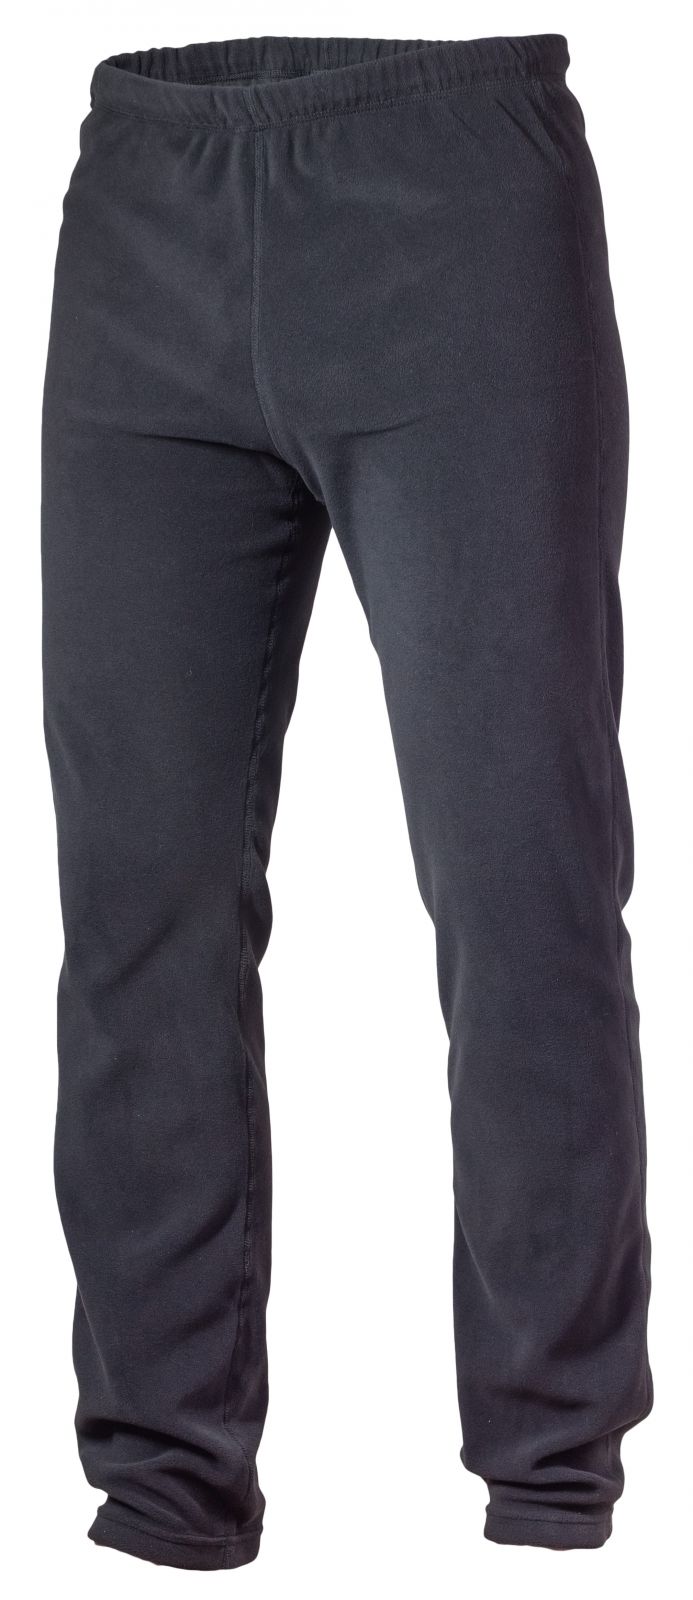 Warmpeace Jive black kalhoty z Polartec Micro - S